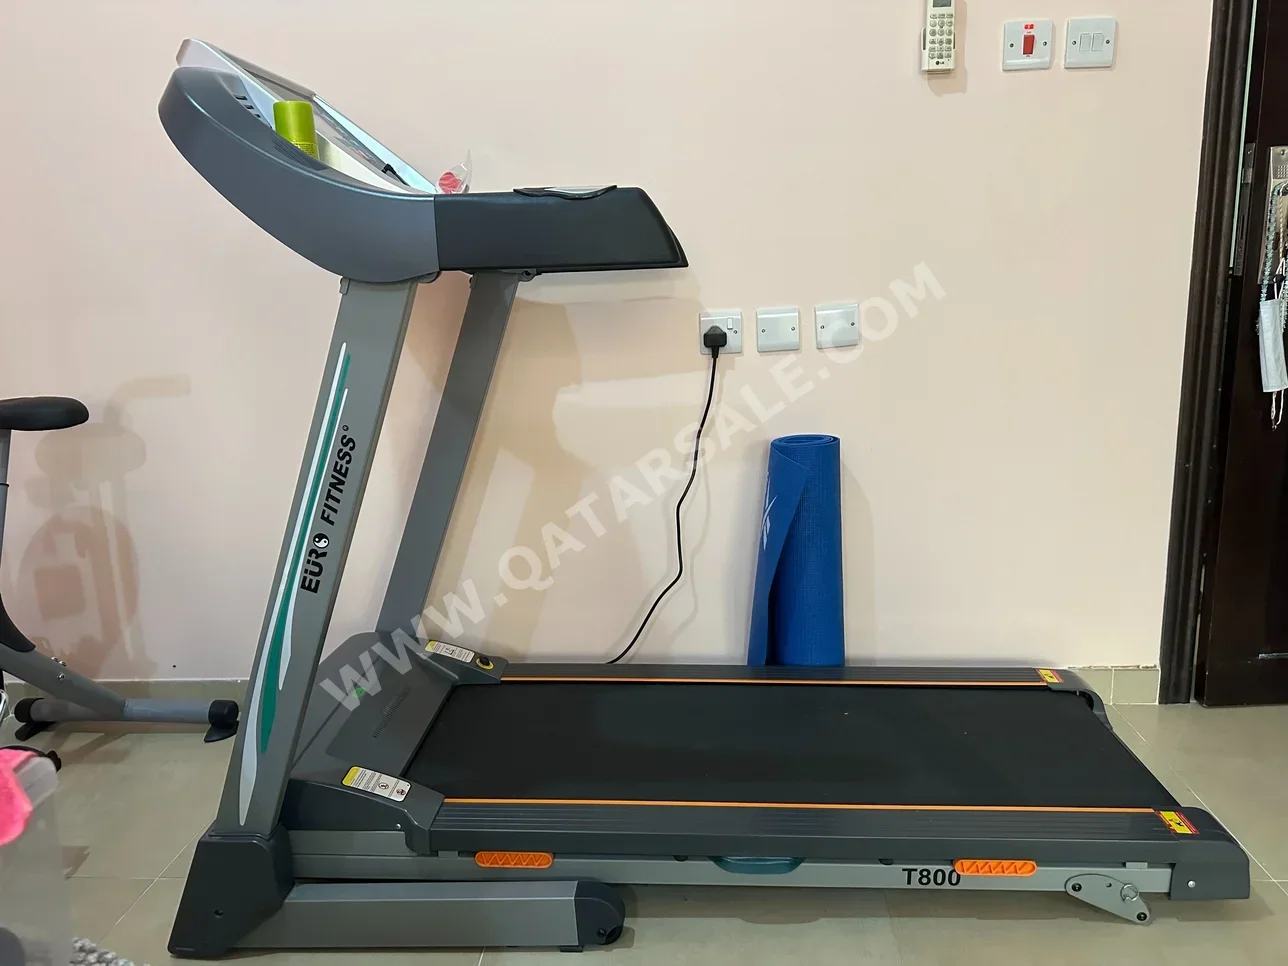 Gym Equipment Machines Treadmill  Gray  Euro Fitness  160 CM  2021  70 CM  120 Kg